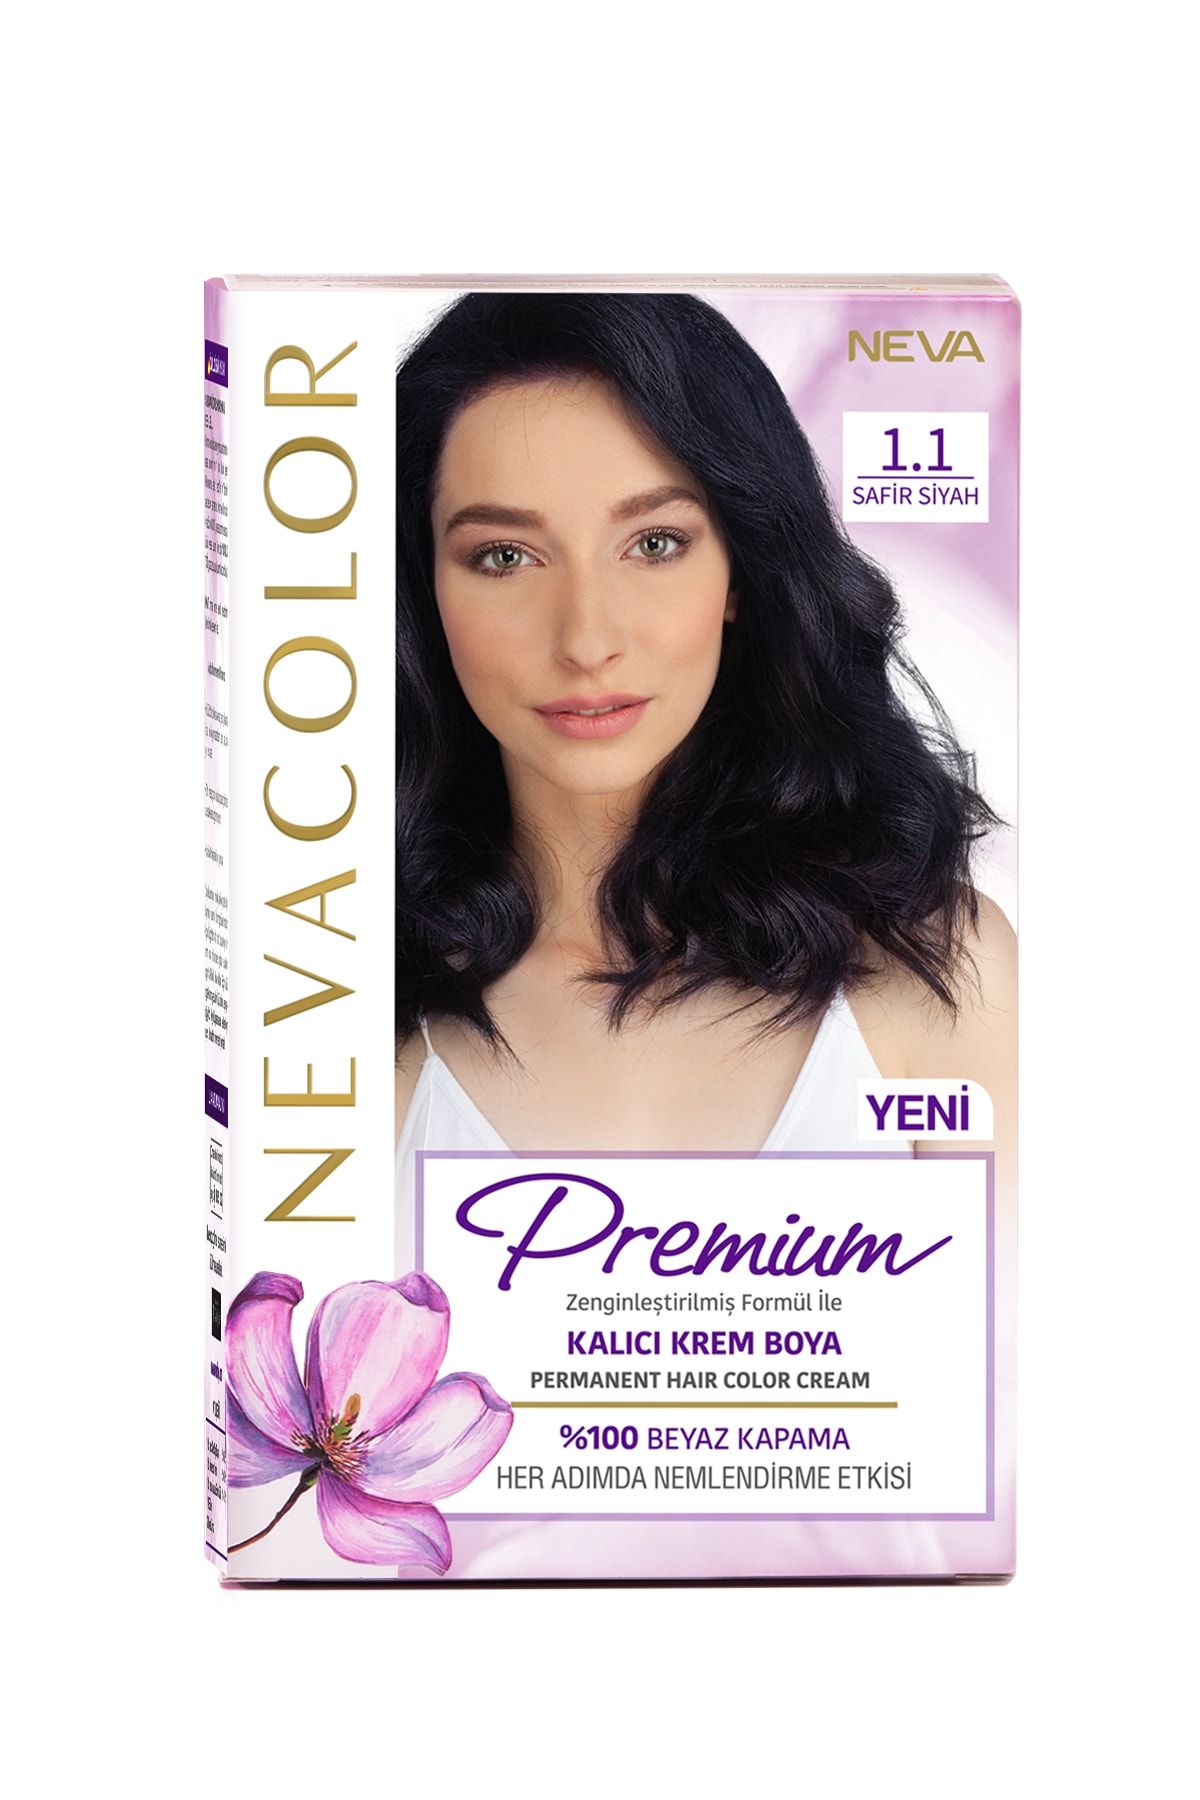 NEVA KOZMETİK Nevacolor Premium Kalıcı Krem Set Boya 1.1 Safir Siyah